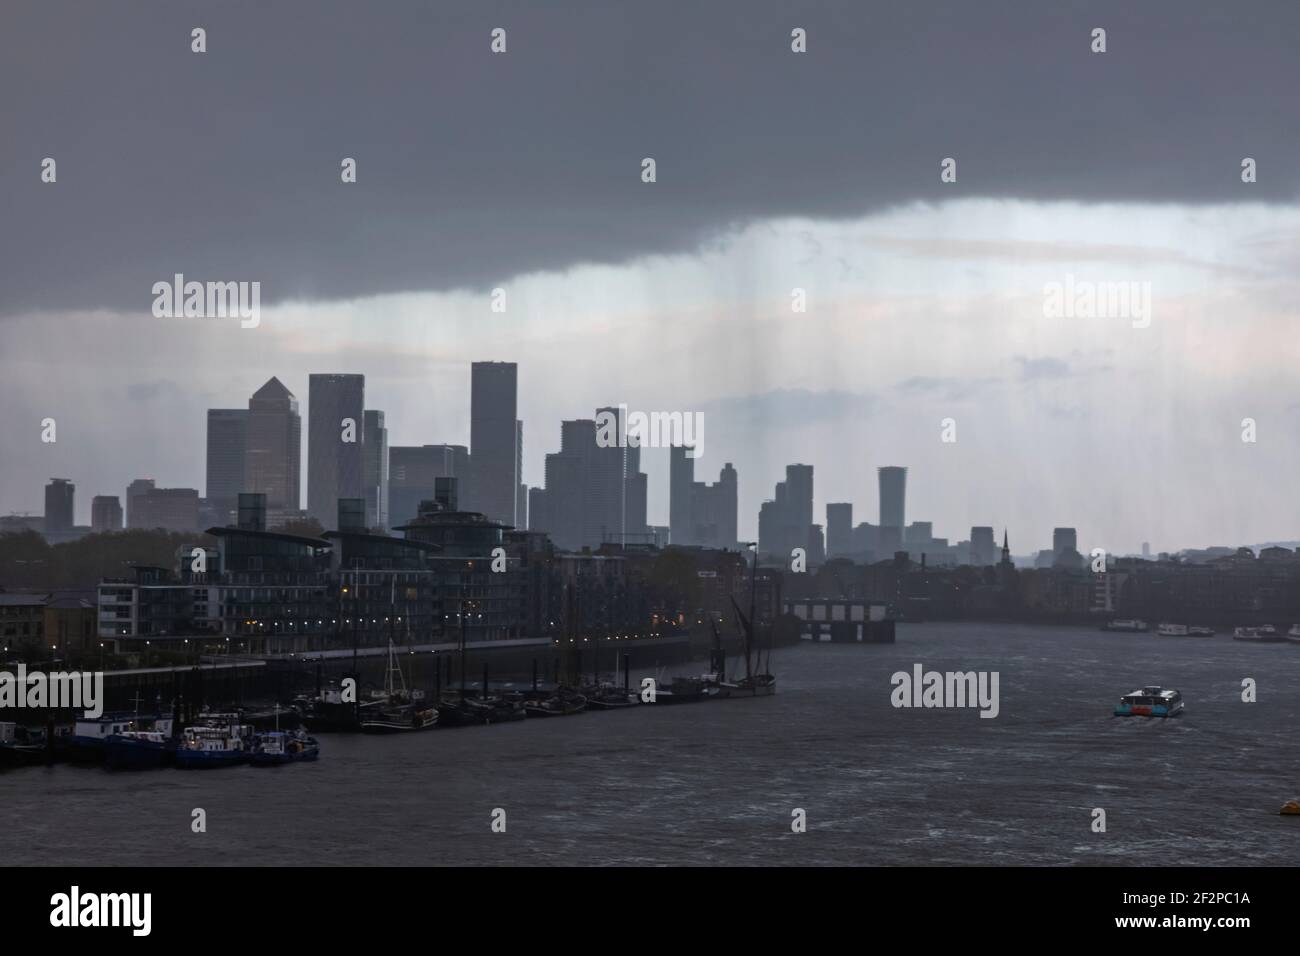 Inglaterra, Londres, Docklands, River Thames y Canary Wharf Skyline en un día húmedo nublado Foto de stock